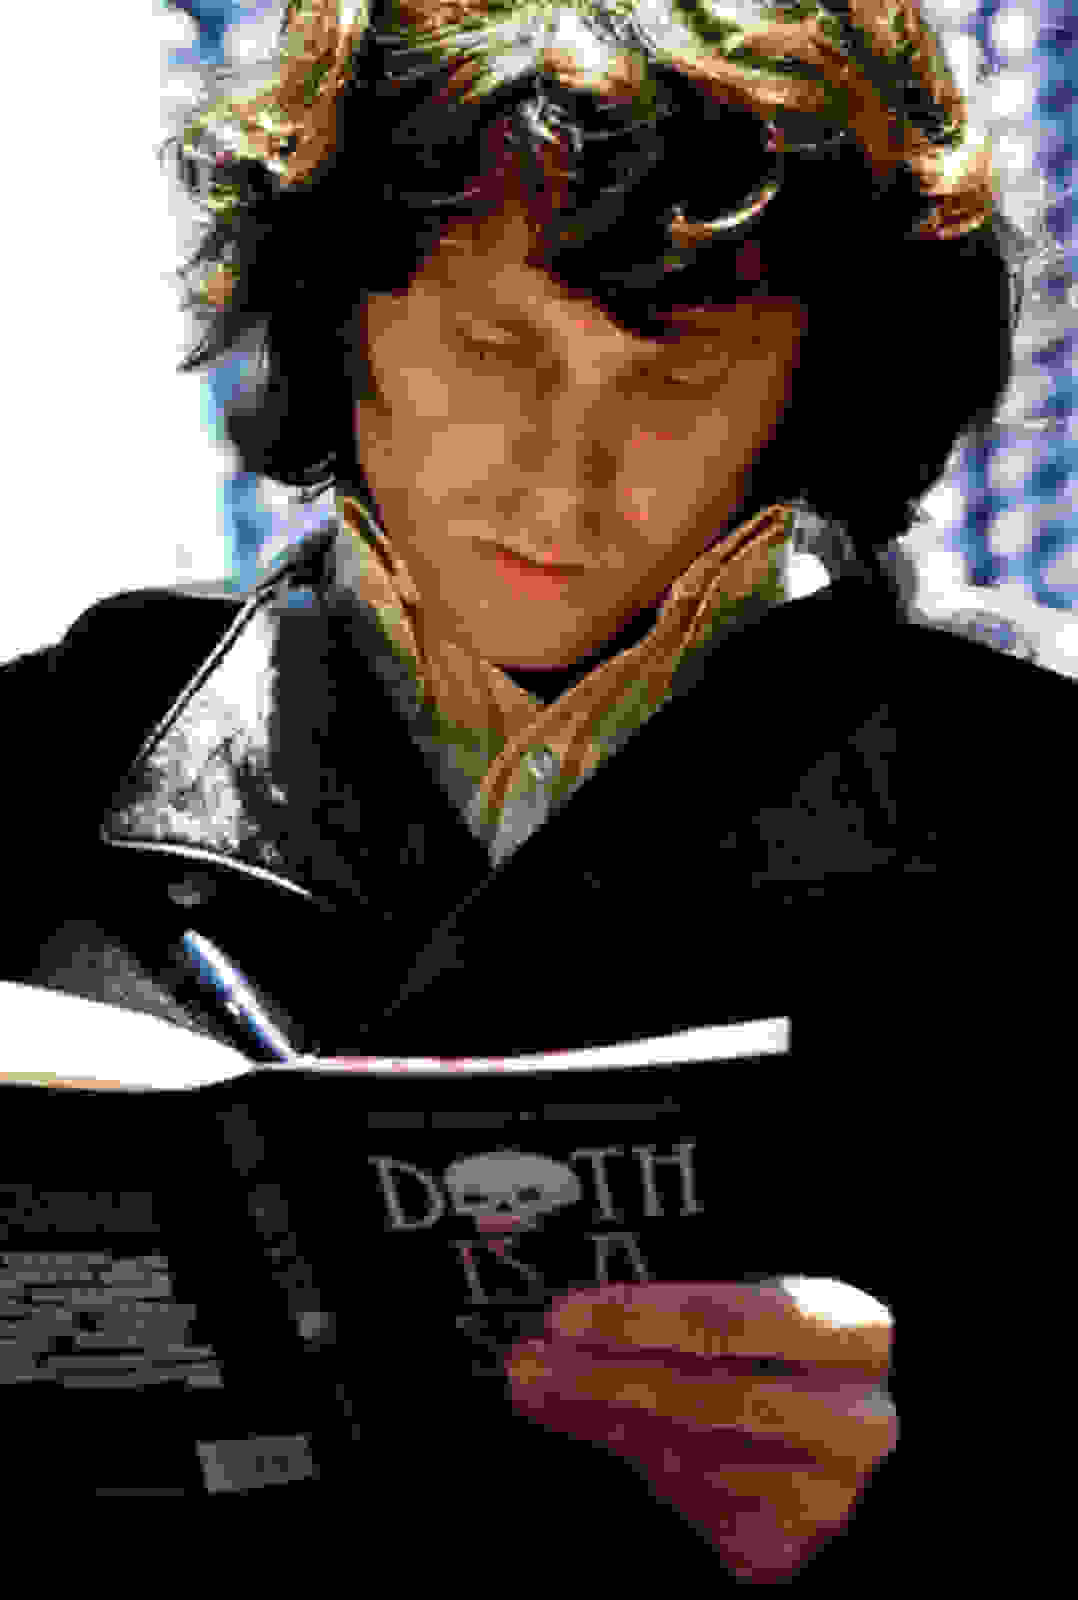 Jim-Morrison-Reading-His-Favorite-Book